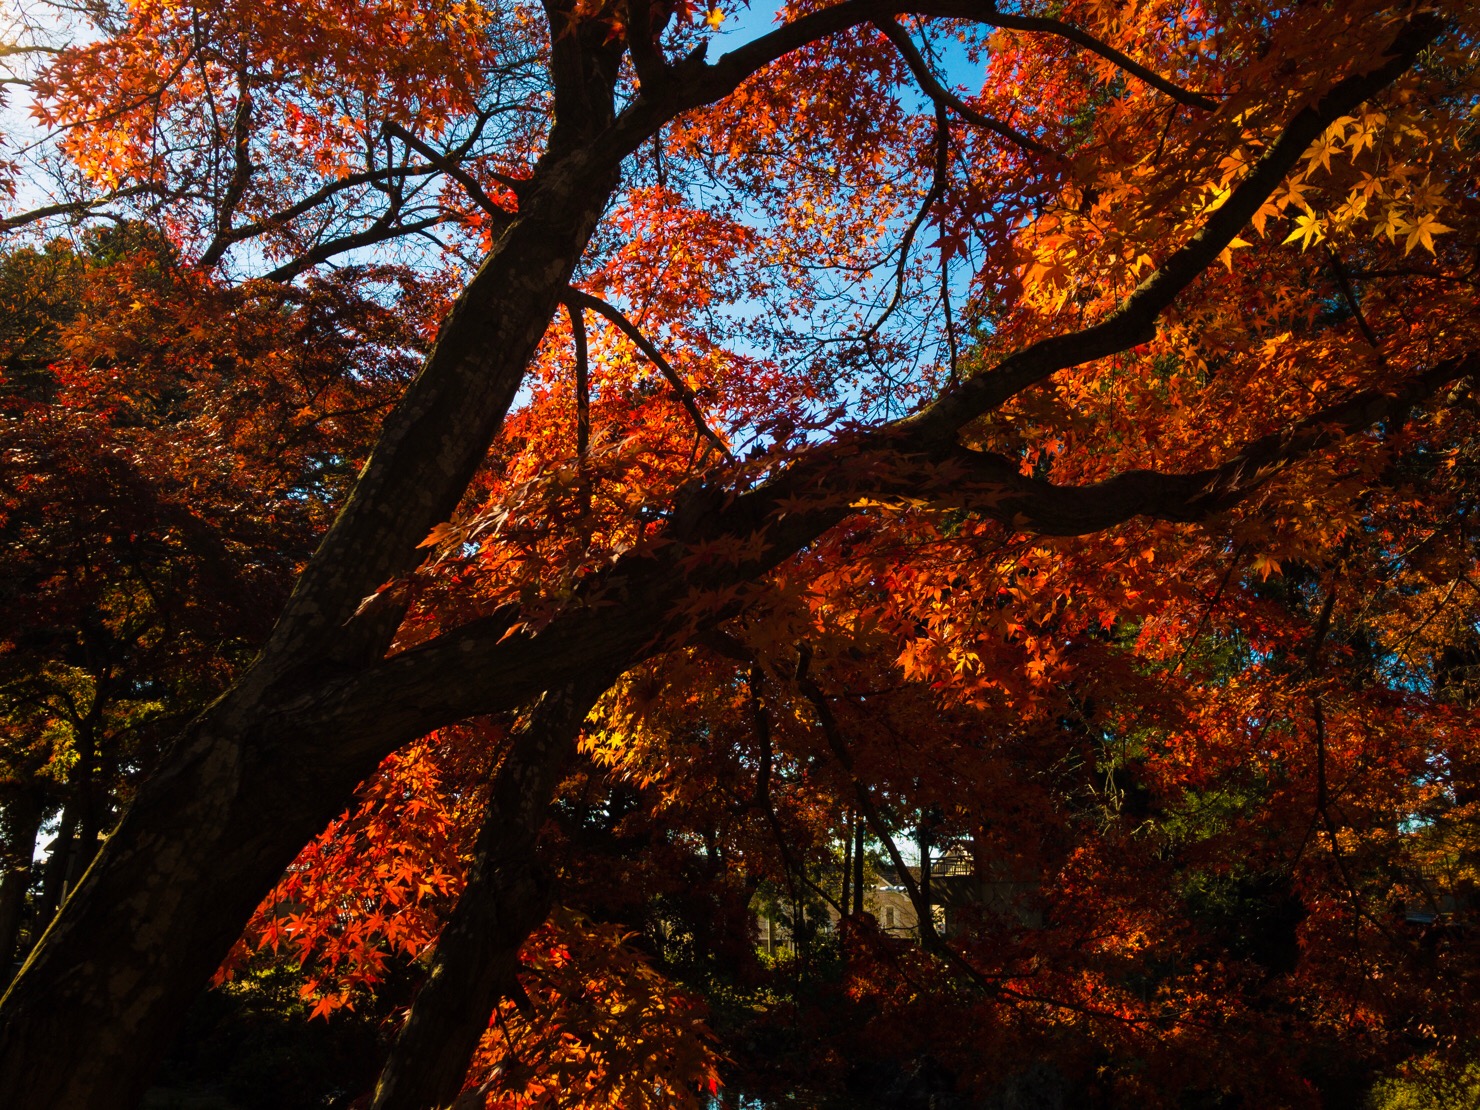 恵林寺 山梨県 武田信玄 菩提寺の紅葉が素晴らしい 17年11月19日 ものくろぼっくす